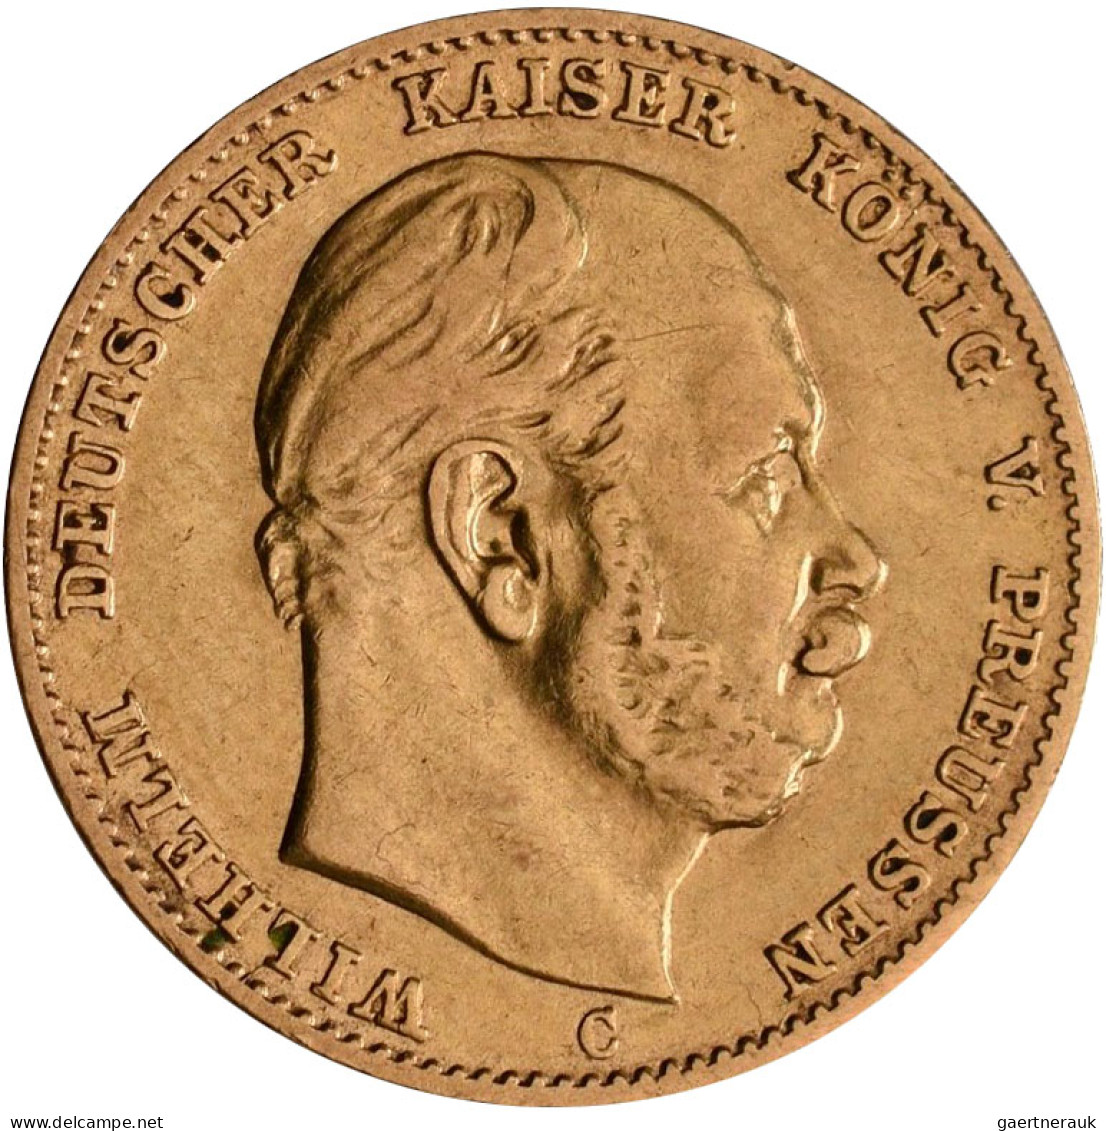 Preußen - Anlagegold: Wilhelm I. 1861-1888: 10 Mark 1873 C, Jaeger 242. 3,93 G, - 5, 10 & 20 Mark Gold